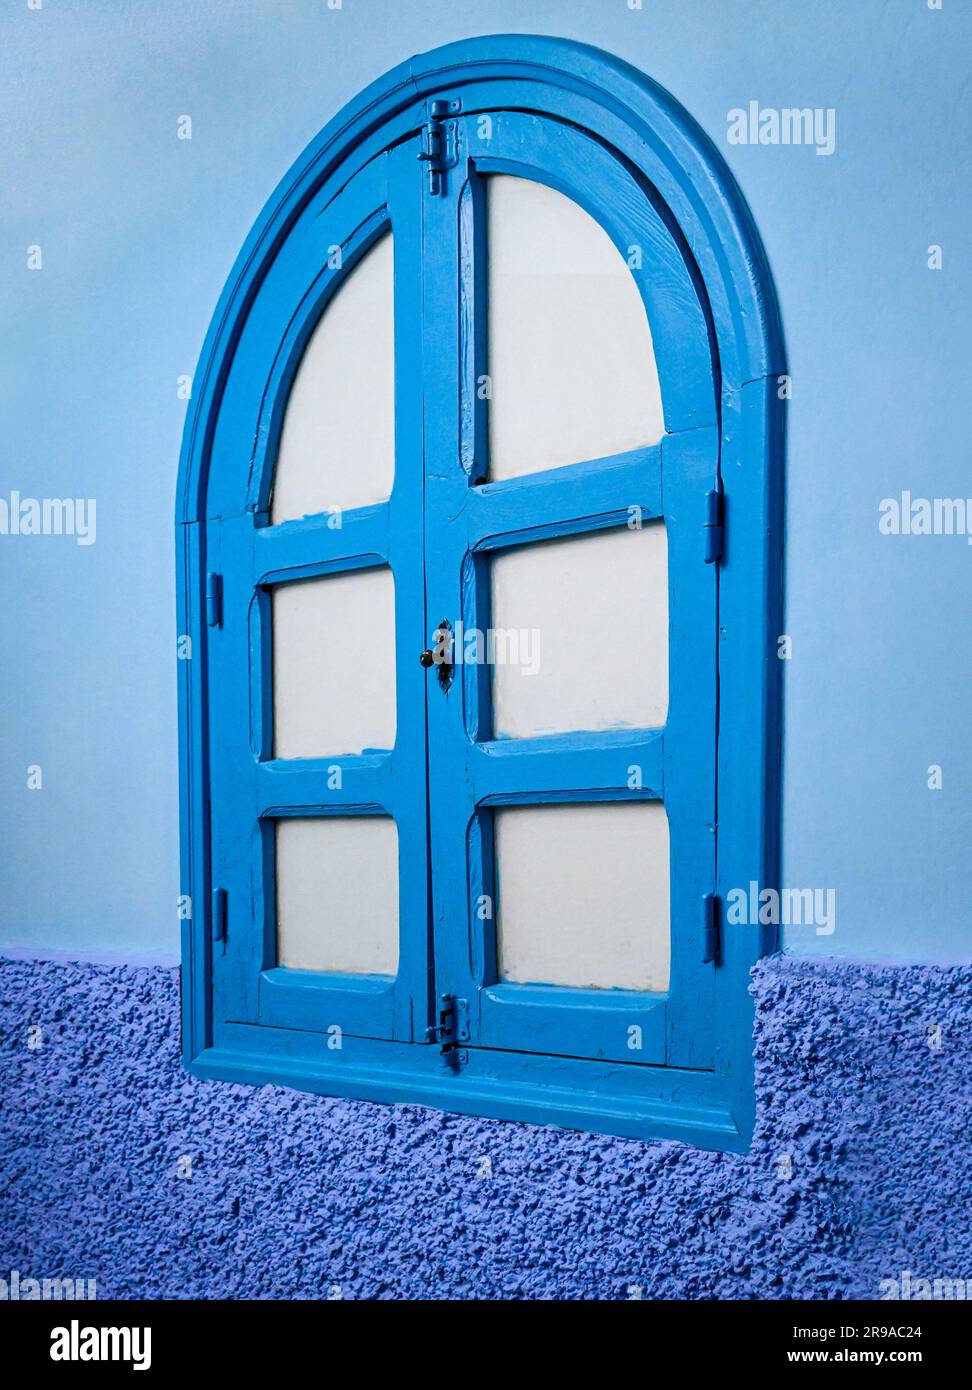 Un mur extérieur et une fenêtre en bois voûté sont dans trois tons de bleu, représentant bien la ville bleue, Chefchaouen, Maroc Banque D'Images